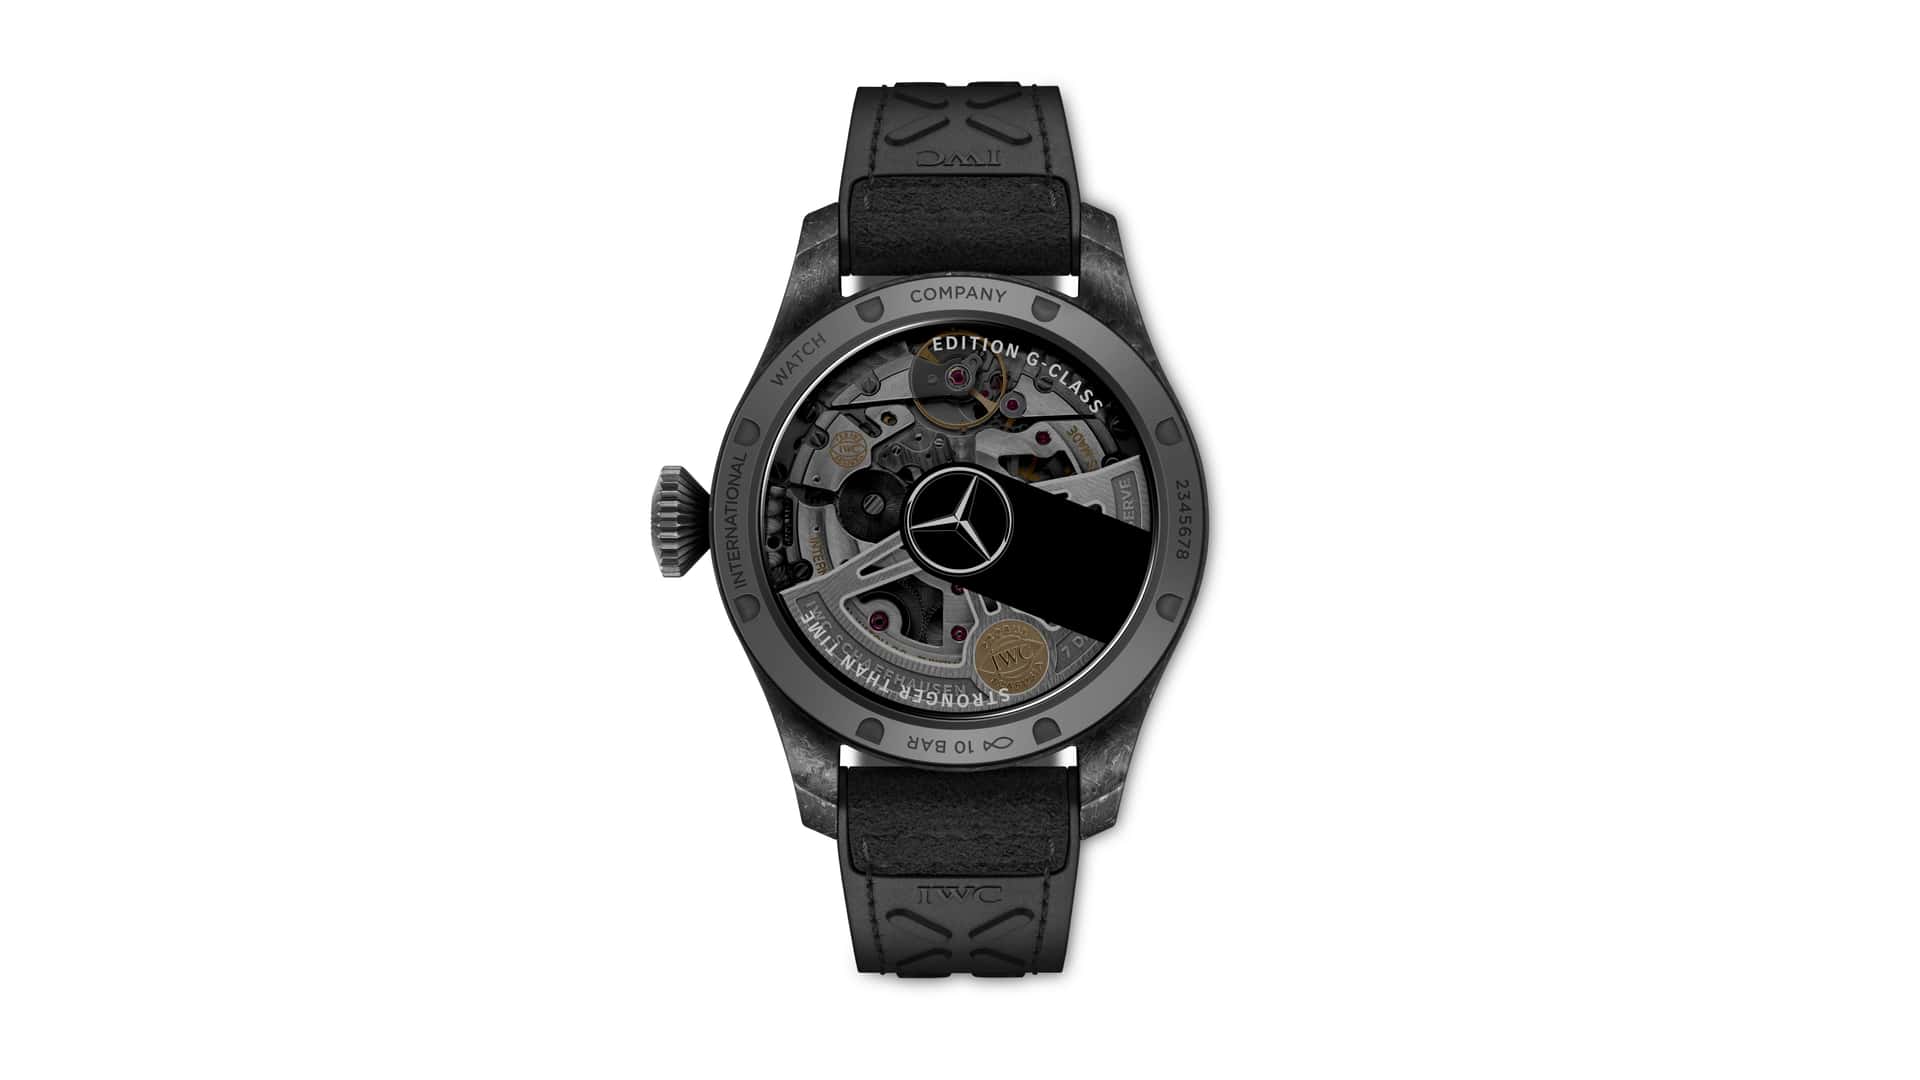 مرسيدس تتعاون مع مصنعة ساعات سويسرية لطرح ساعة يد حصرية بتصميم مستوحى من جي كلاس 5